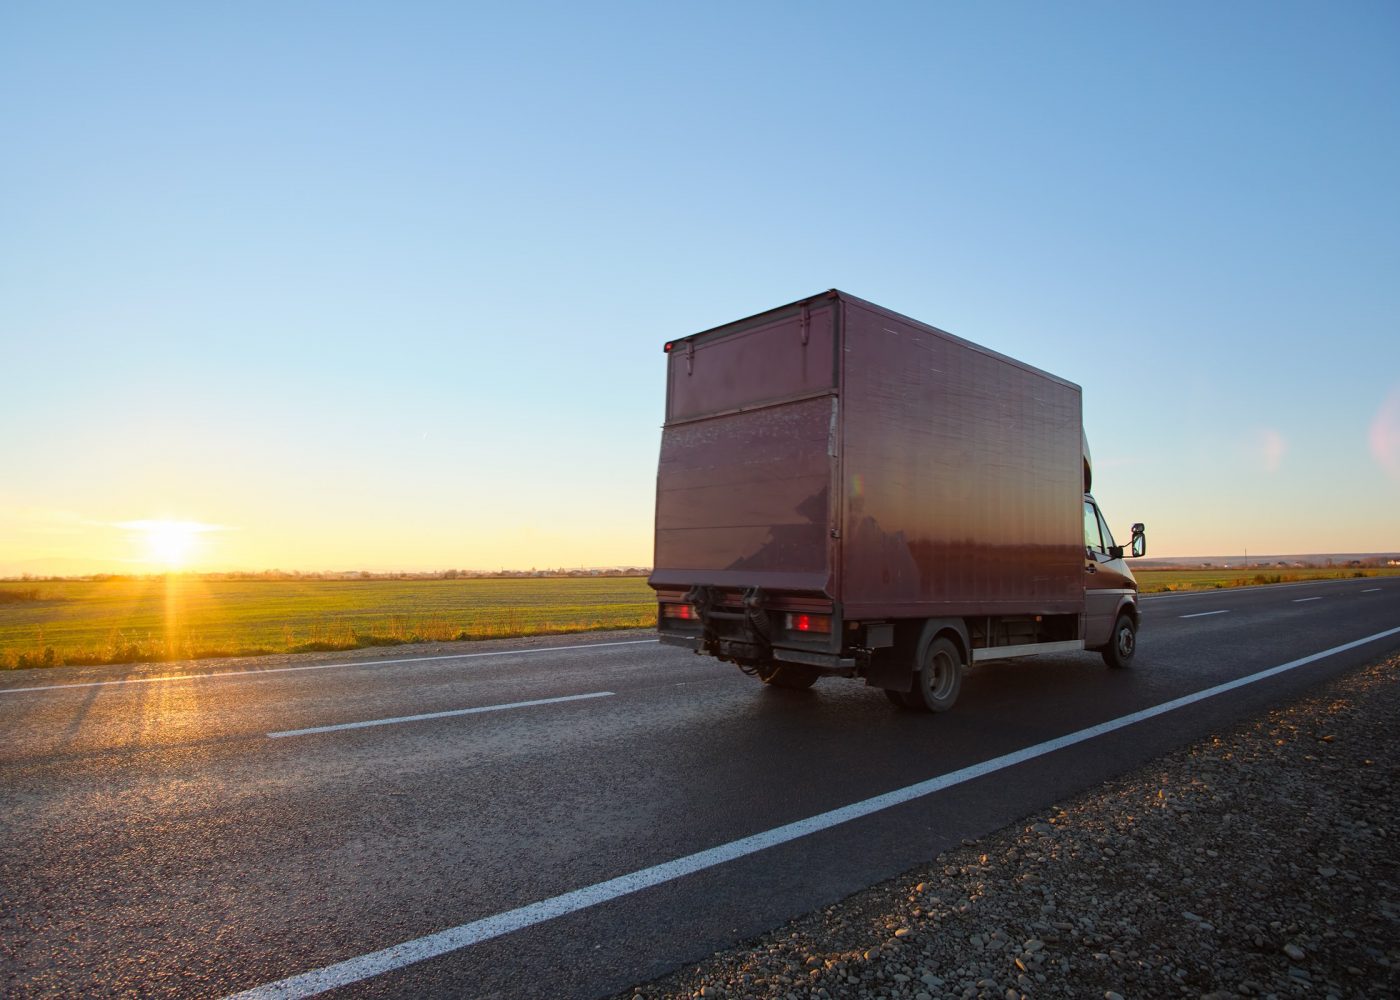 cargo-truck-driving-on-highway-hauling-goods-in-ev-2022-01-31-17-47-32-utc